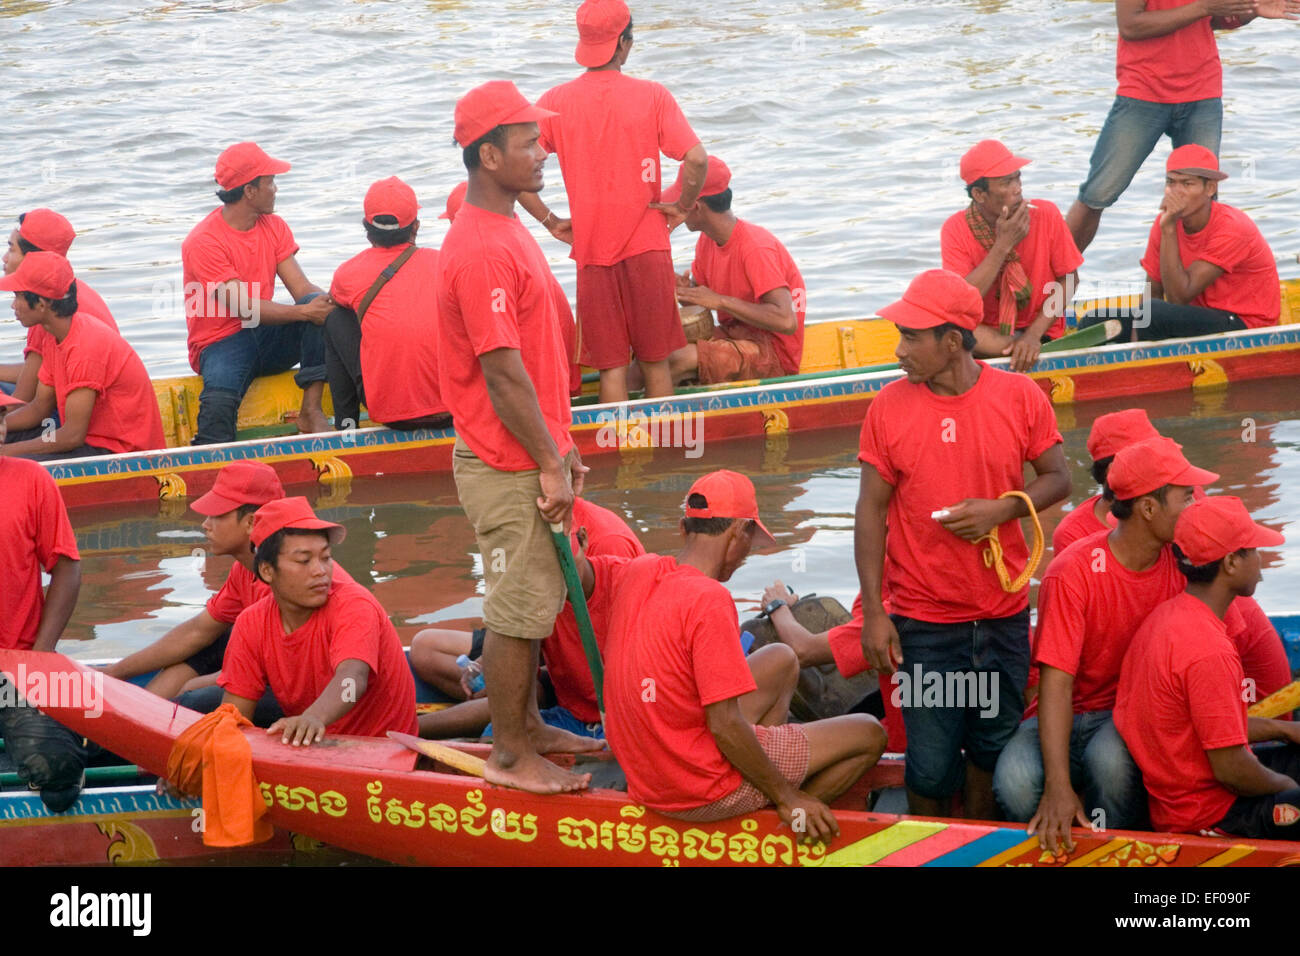 Les hommes sont rassemblés dans des bateaux de course lors de l'Assemblée Phnom Penh Fête de l'eau sur le Mékong à Phnom Penh, Cambodge. Banque D'Images